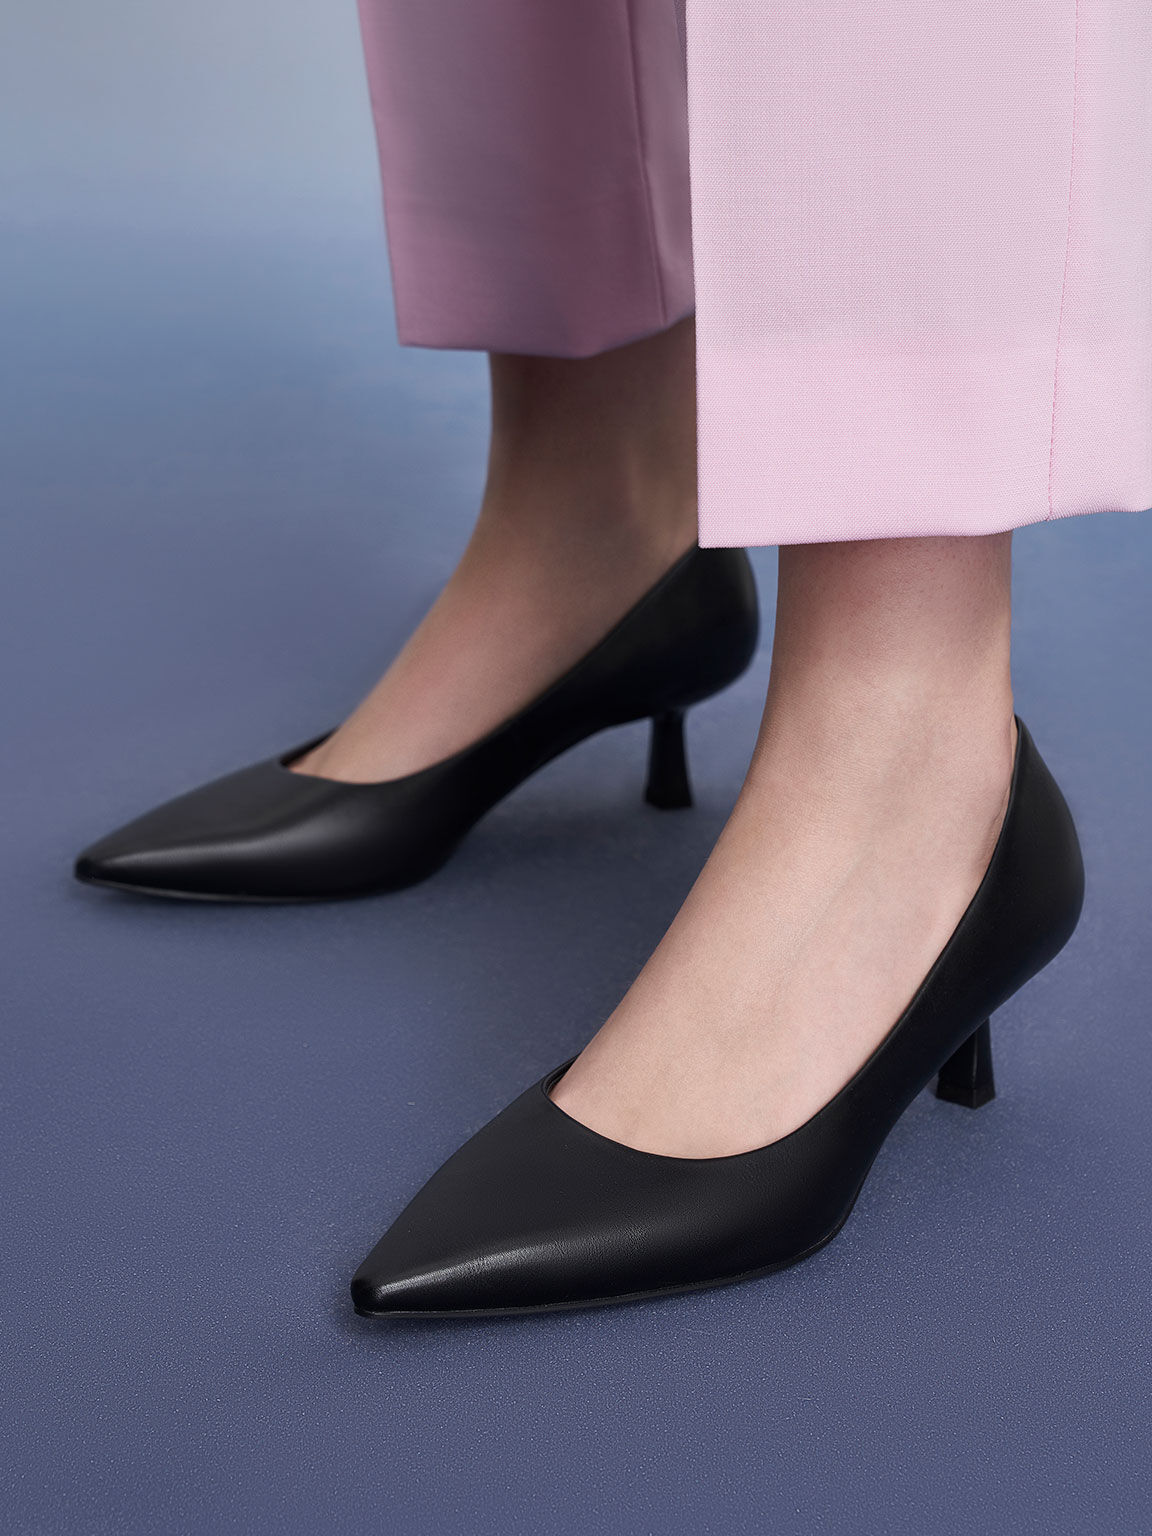 Flattering & Elegant: Pointy vs Round-Toe Wedding Heels